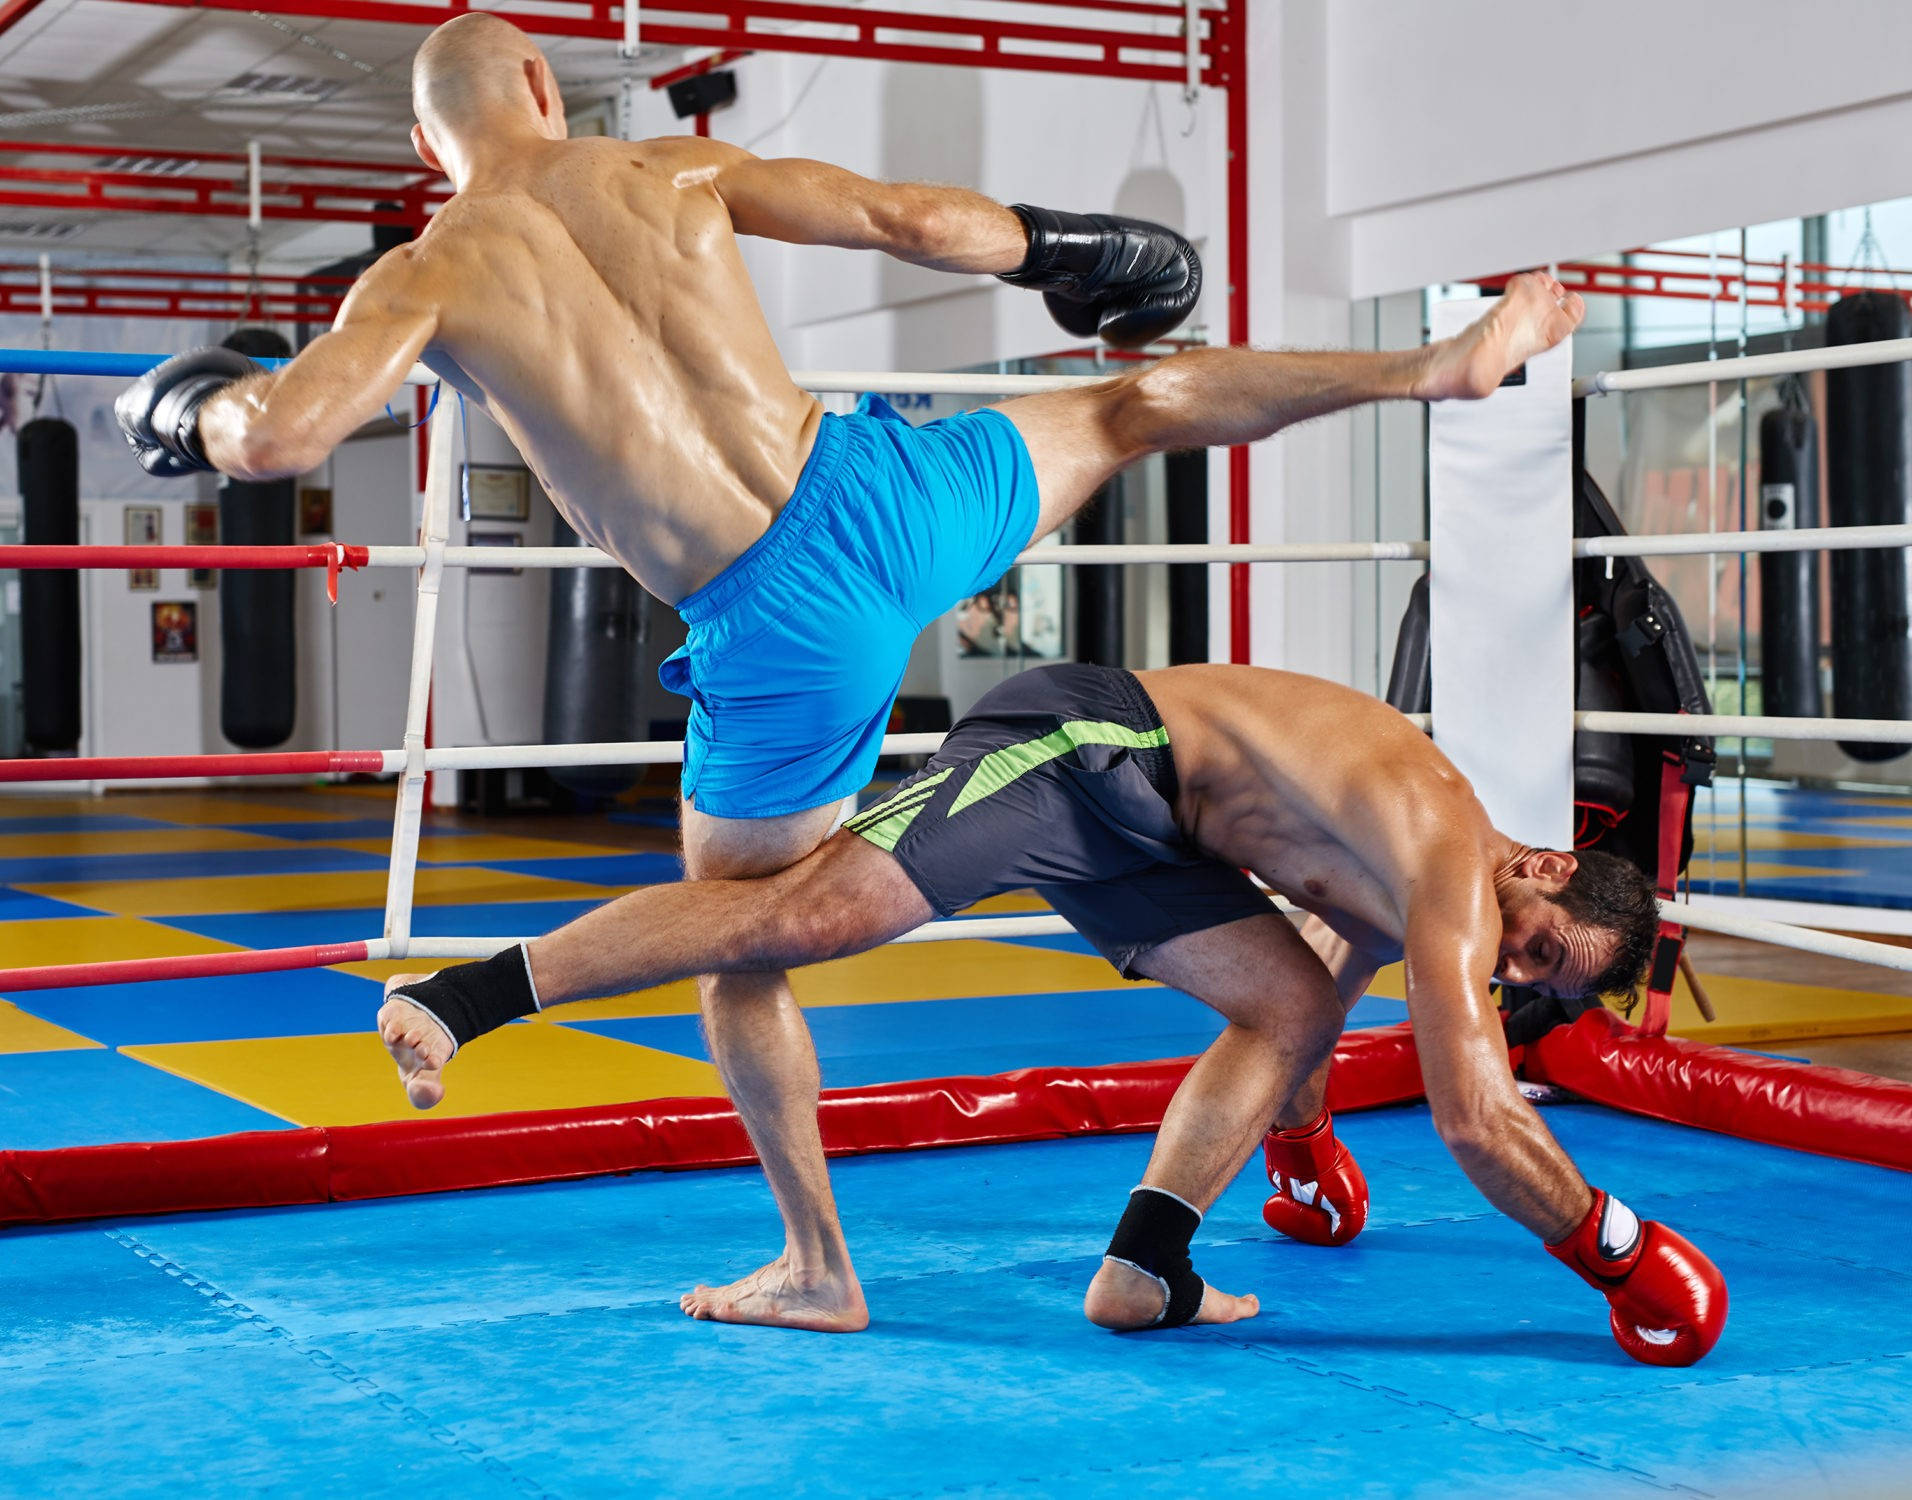 Kickboxsparring-match Im Fitnessstudio Wallpaper